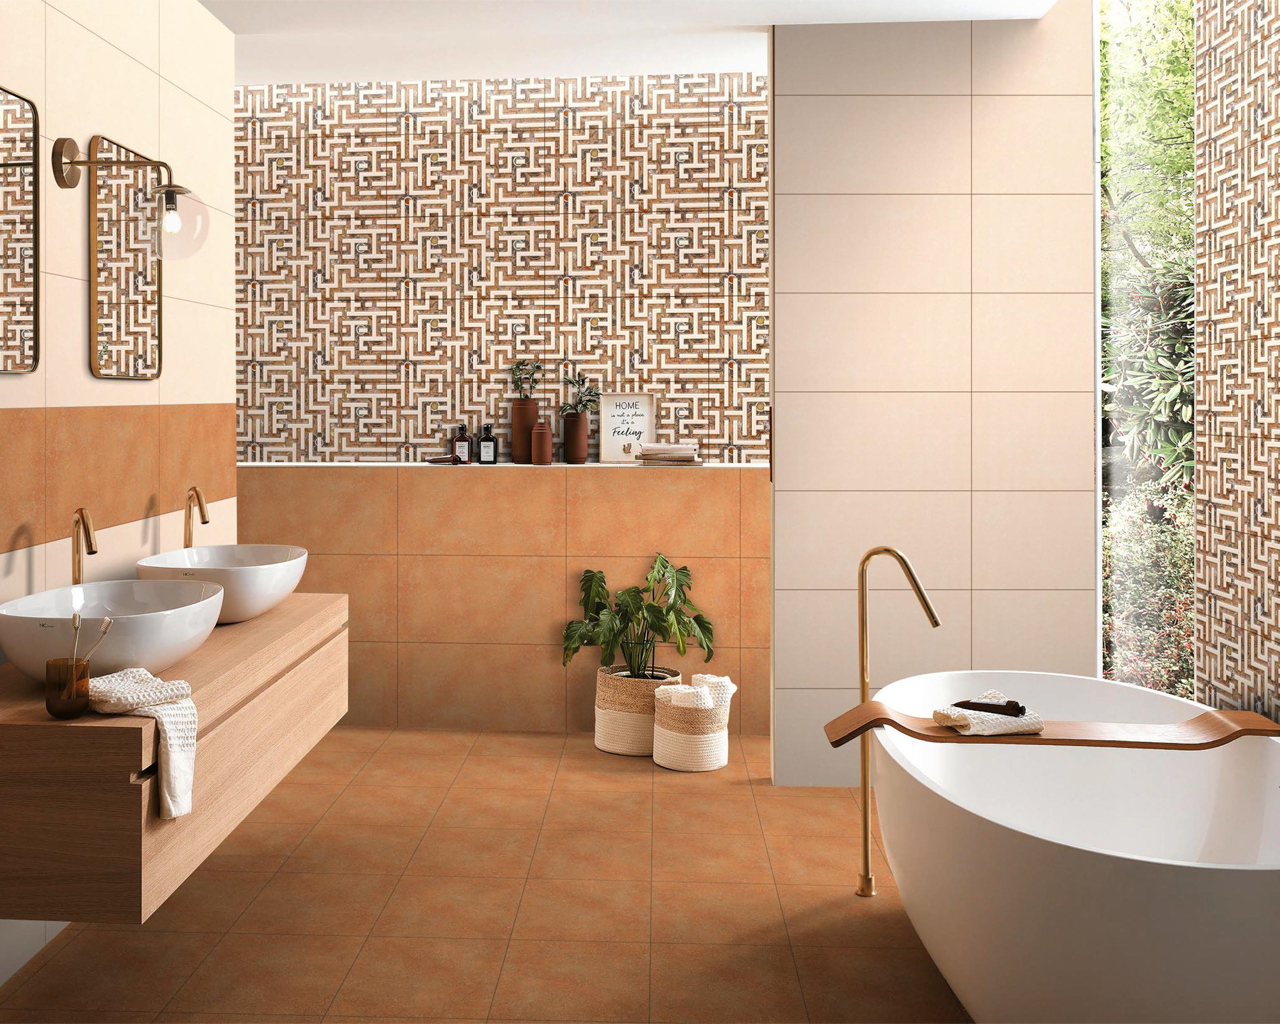 Bathroom tiling ideas for 2022 Best Bathroom Tiles